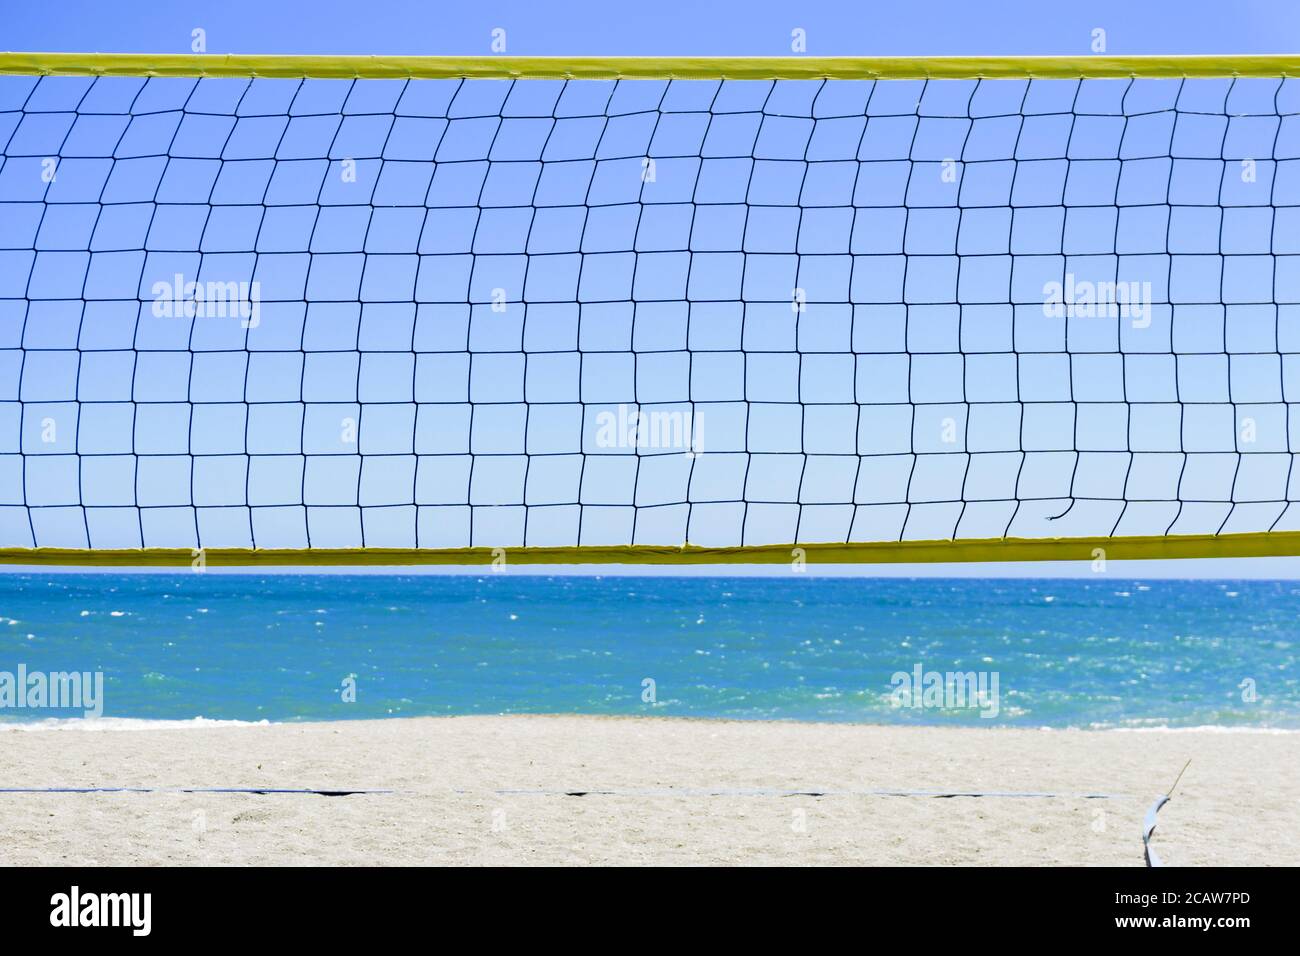 Filet de Beach-volley à Malaga. Andalousie, Espagne Banque D'Images